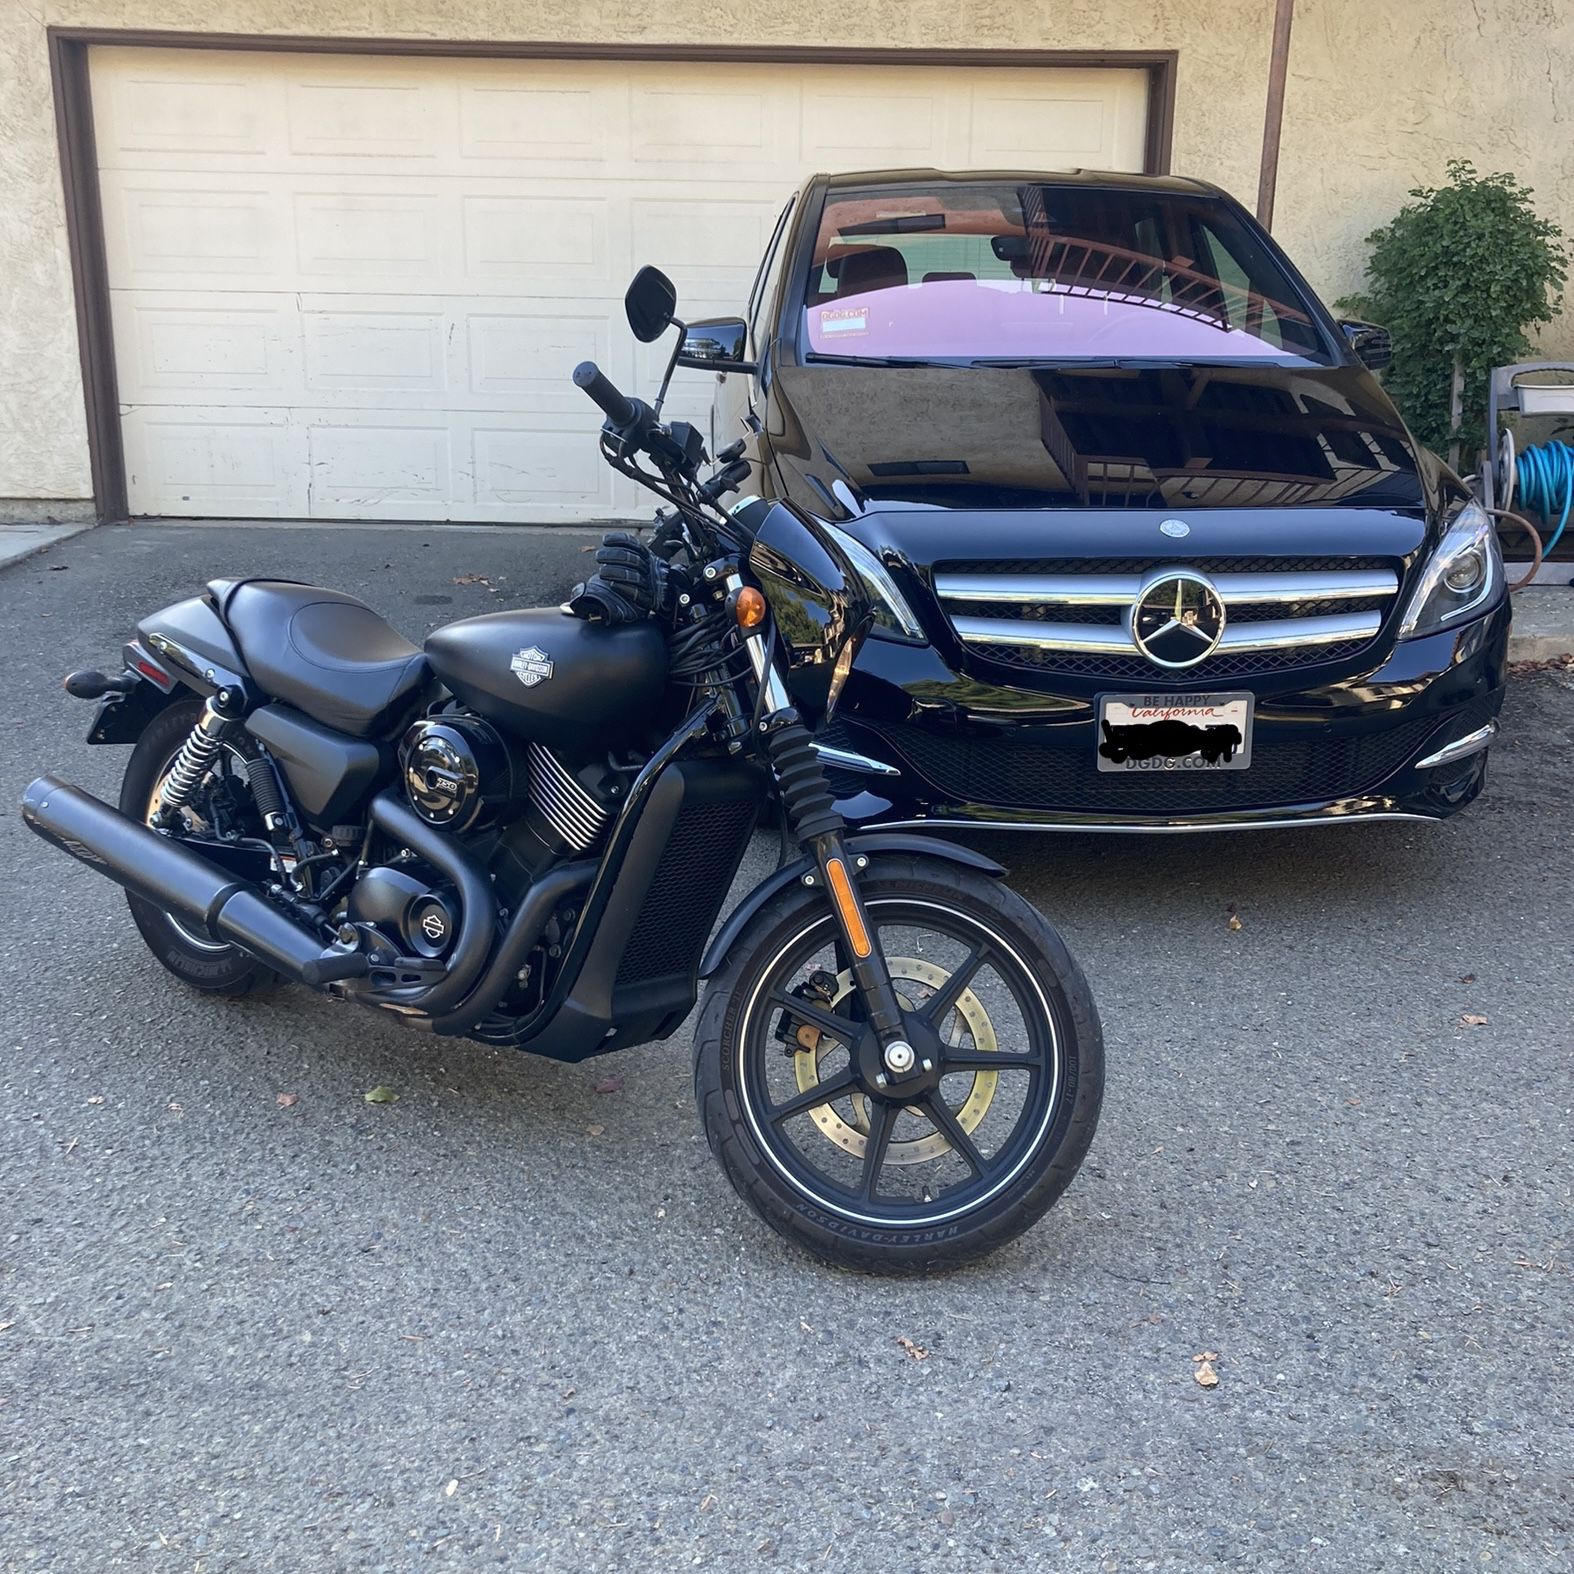 2015 Harley Davidson XG750